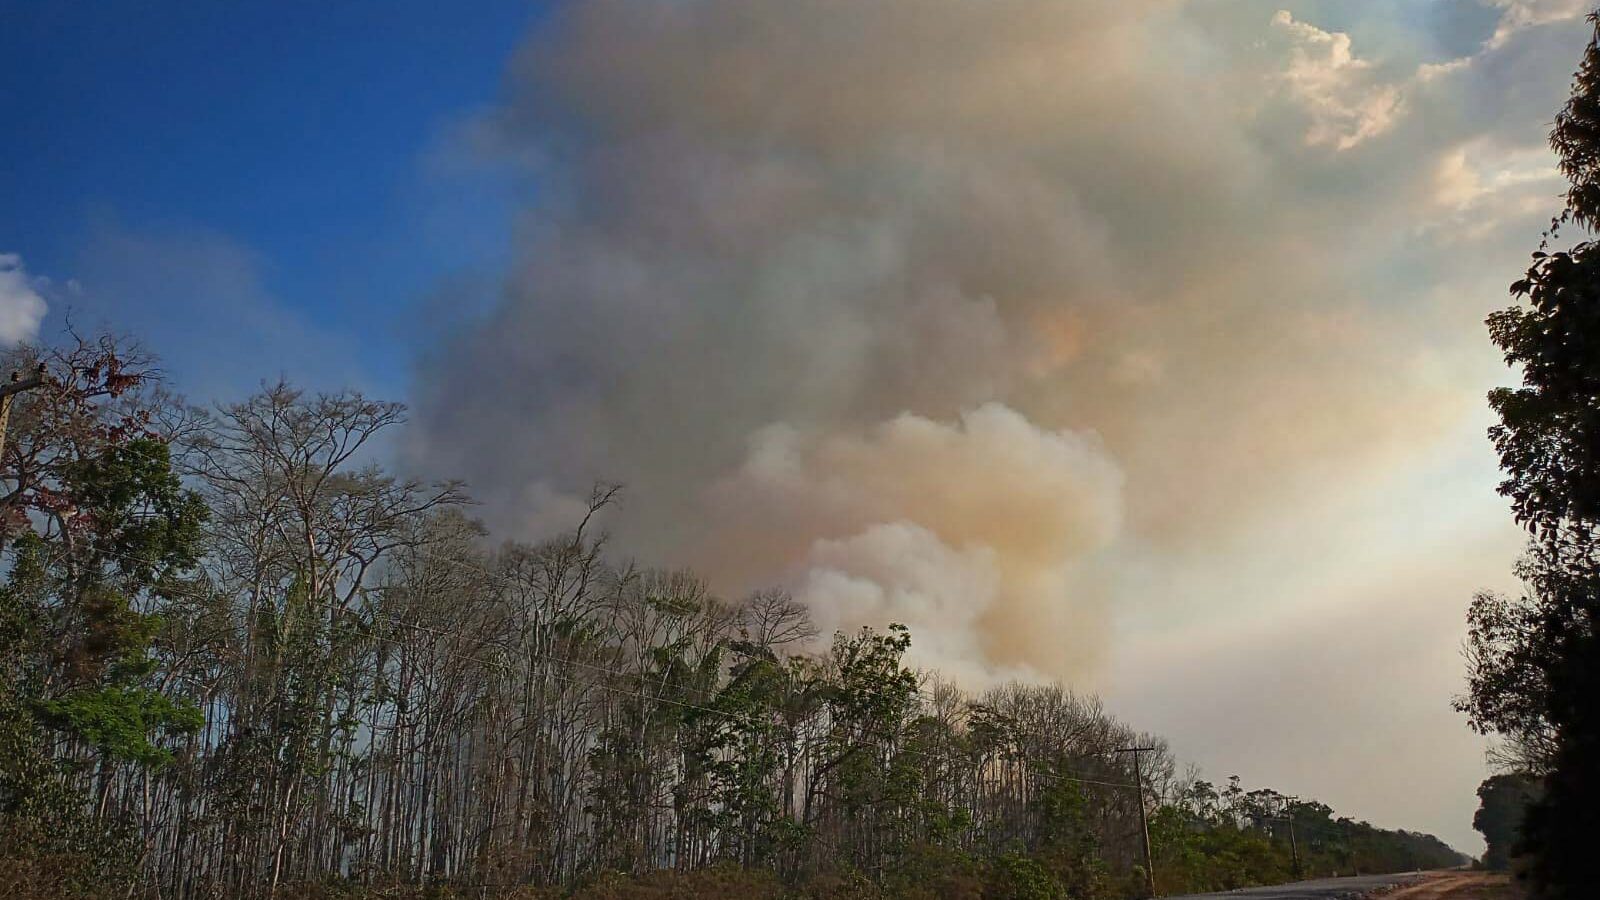 Queimadas no entorno da BR 319: quase 4 mil focos de incêndio no Amazonas em outubro (Foto: Carlos Durigan/WCS/Amazônia Real)